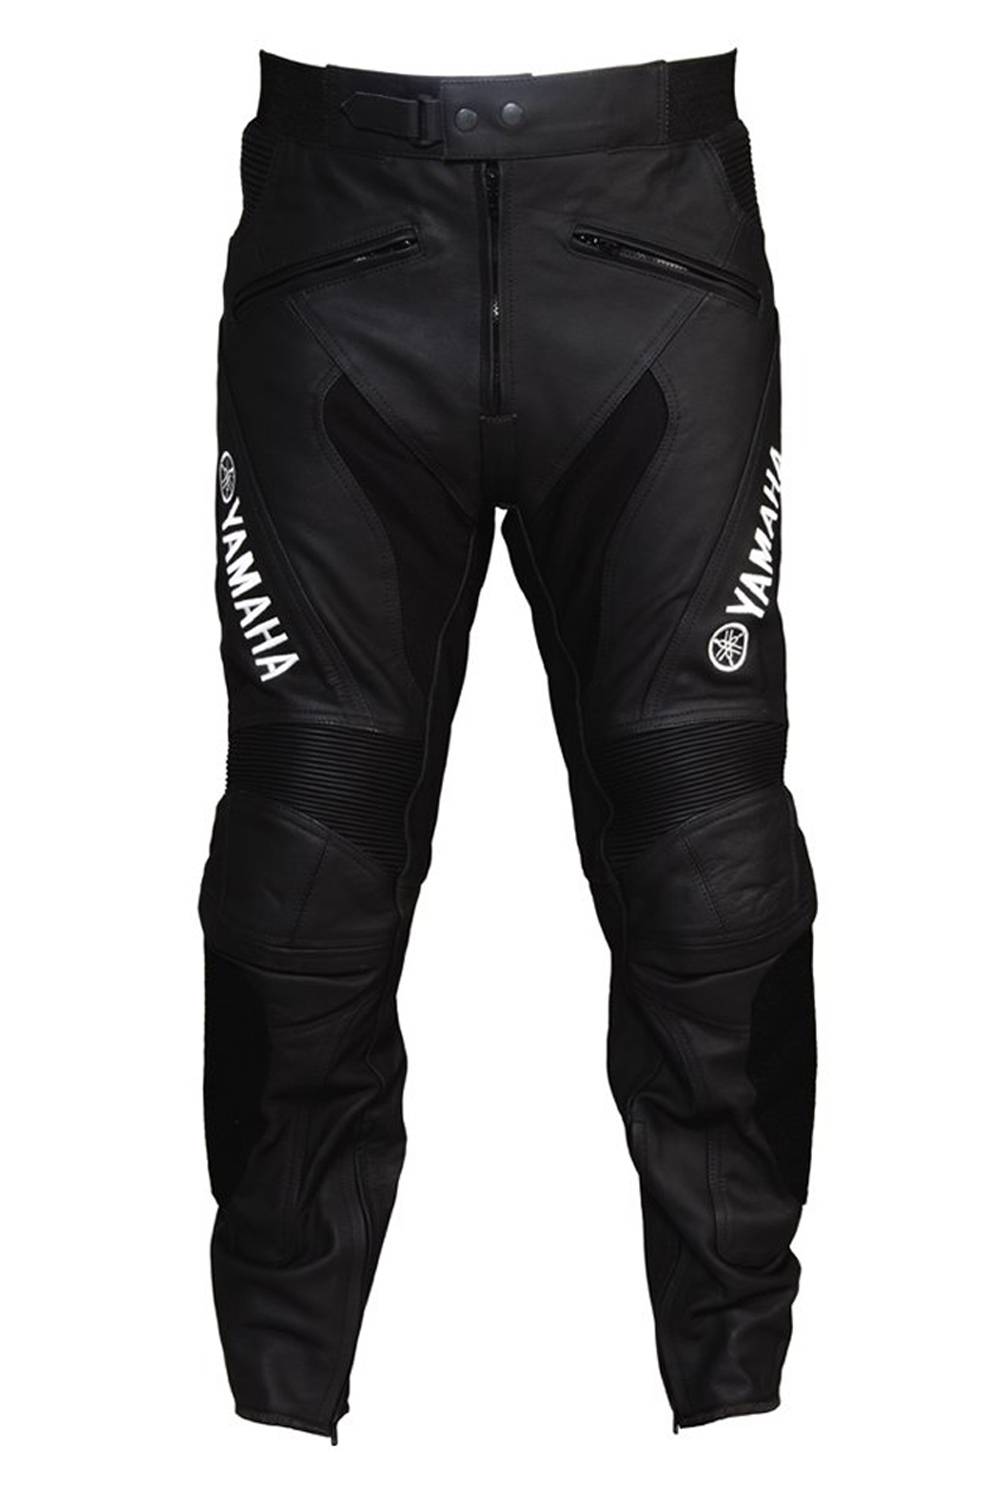 Yamaha - Pantalón Deportivo